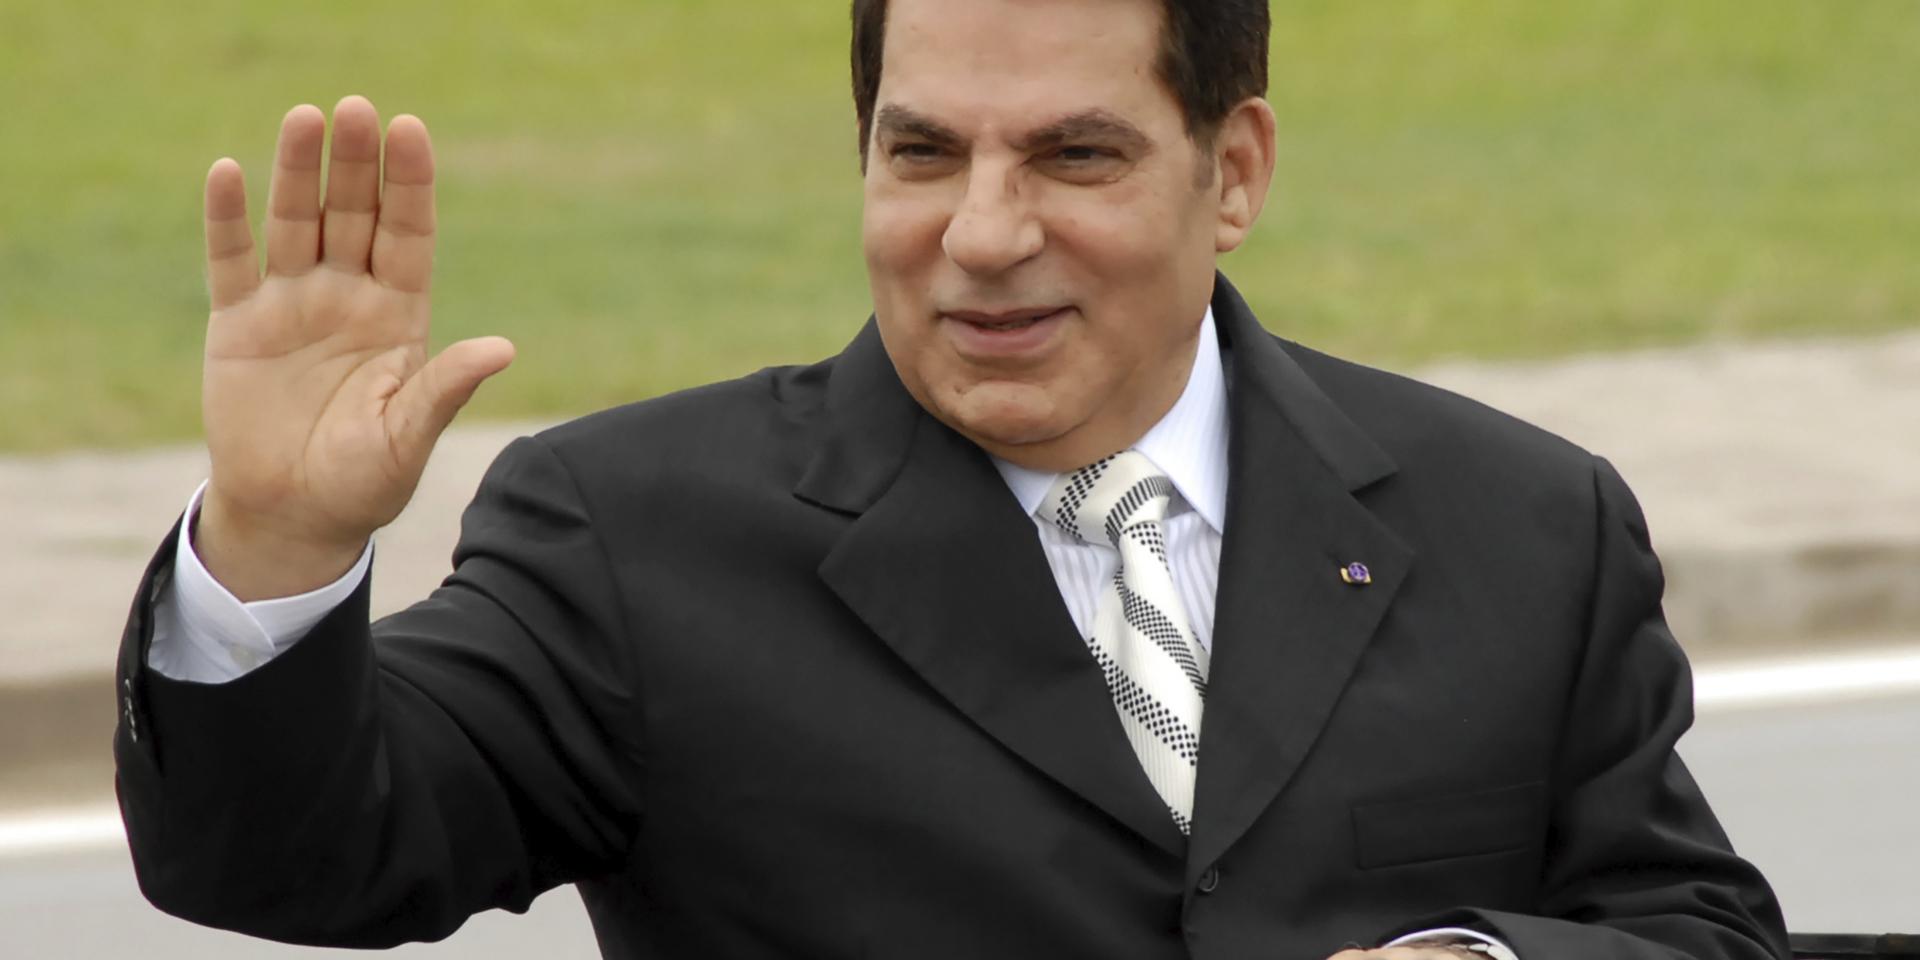 Zine al Abidine Ben Ali medan han ännu var president i Tunisien. Bilden är från 2009.